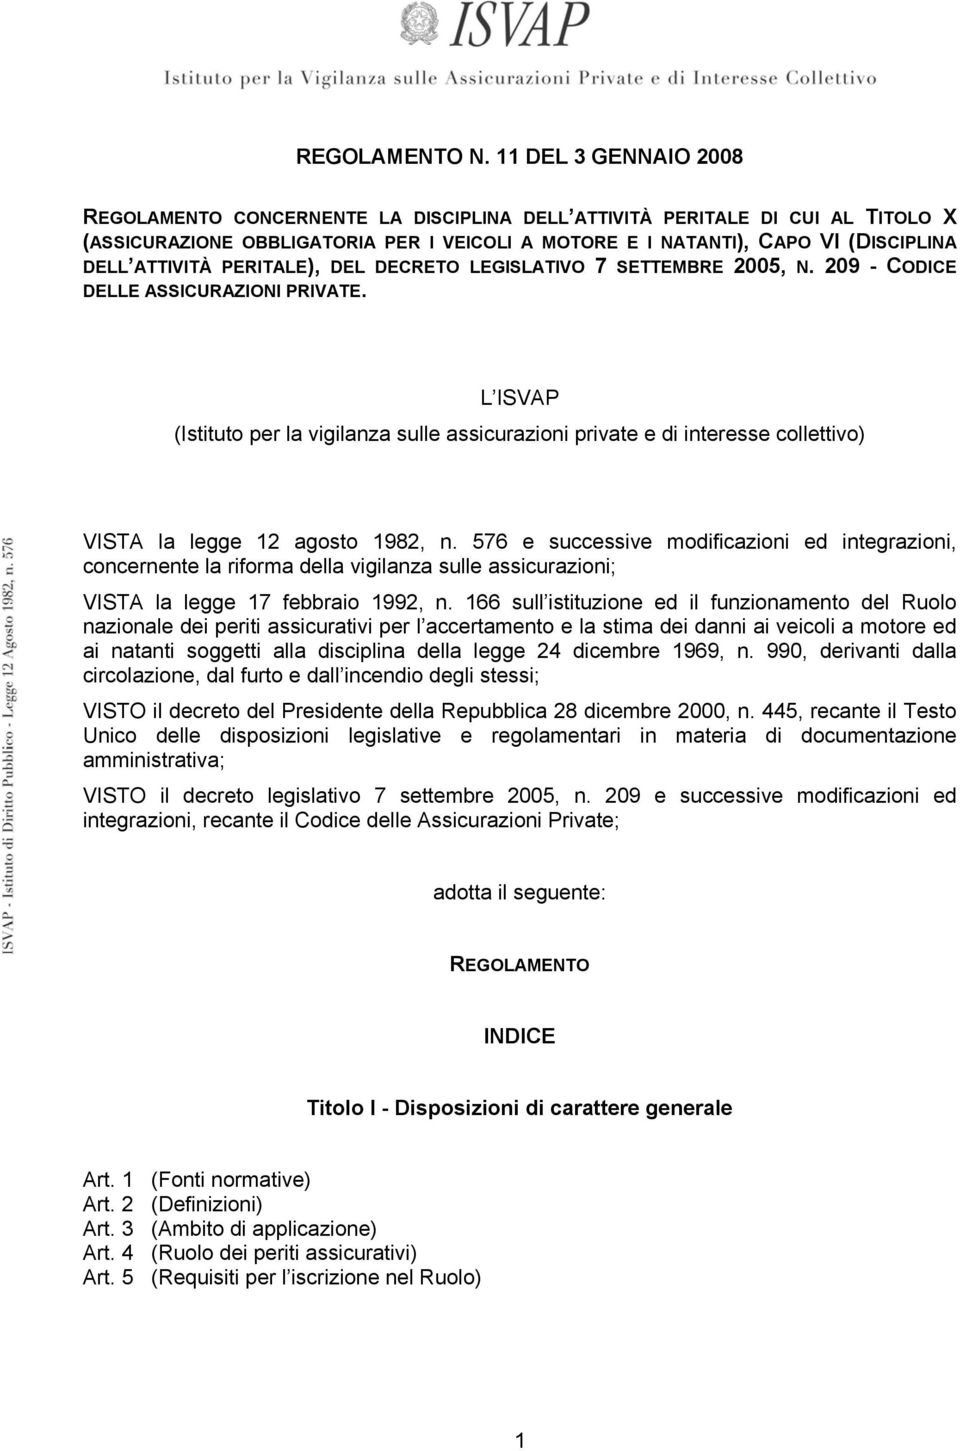 ATTIVITÀ PERITALE), DEL DECRETO LEGISLATIVO 7 SETTEMBRE 2005, N. 209 - CODICE DELLE ASSICURAZIONI PRIVATE.